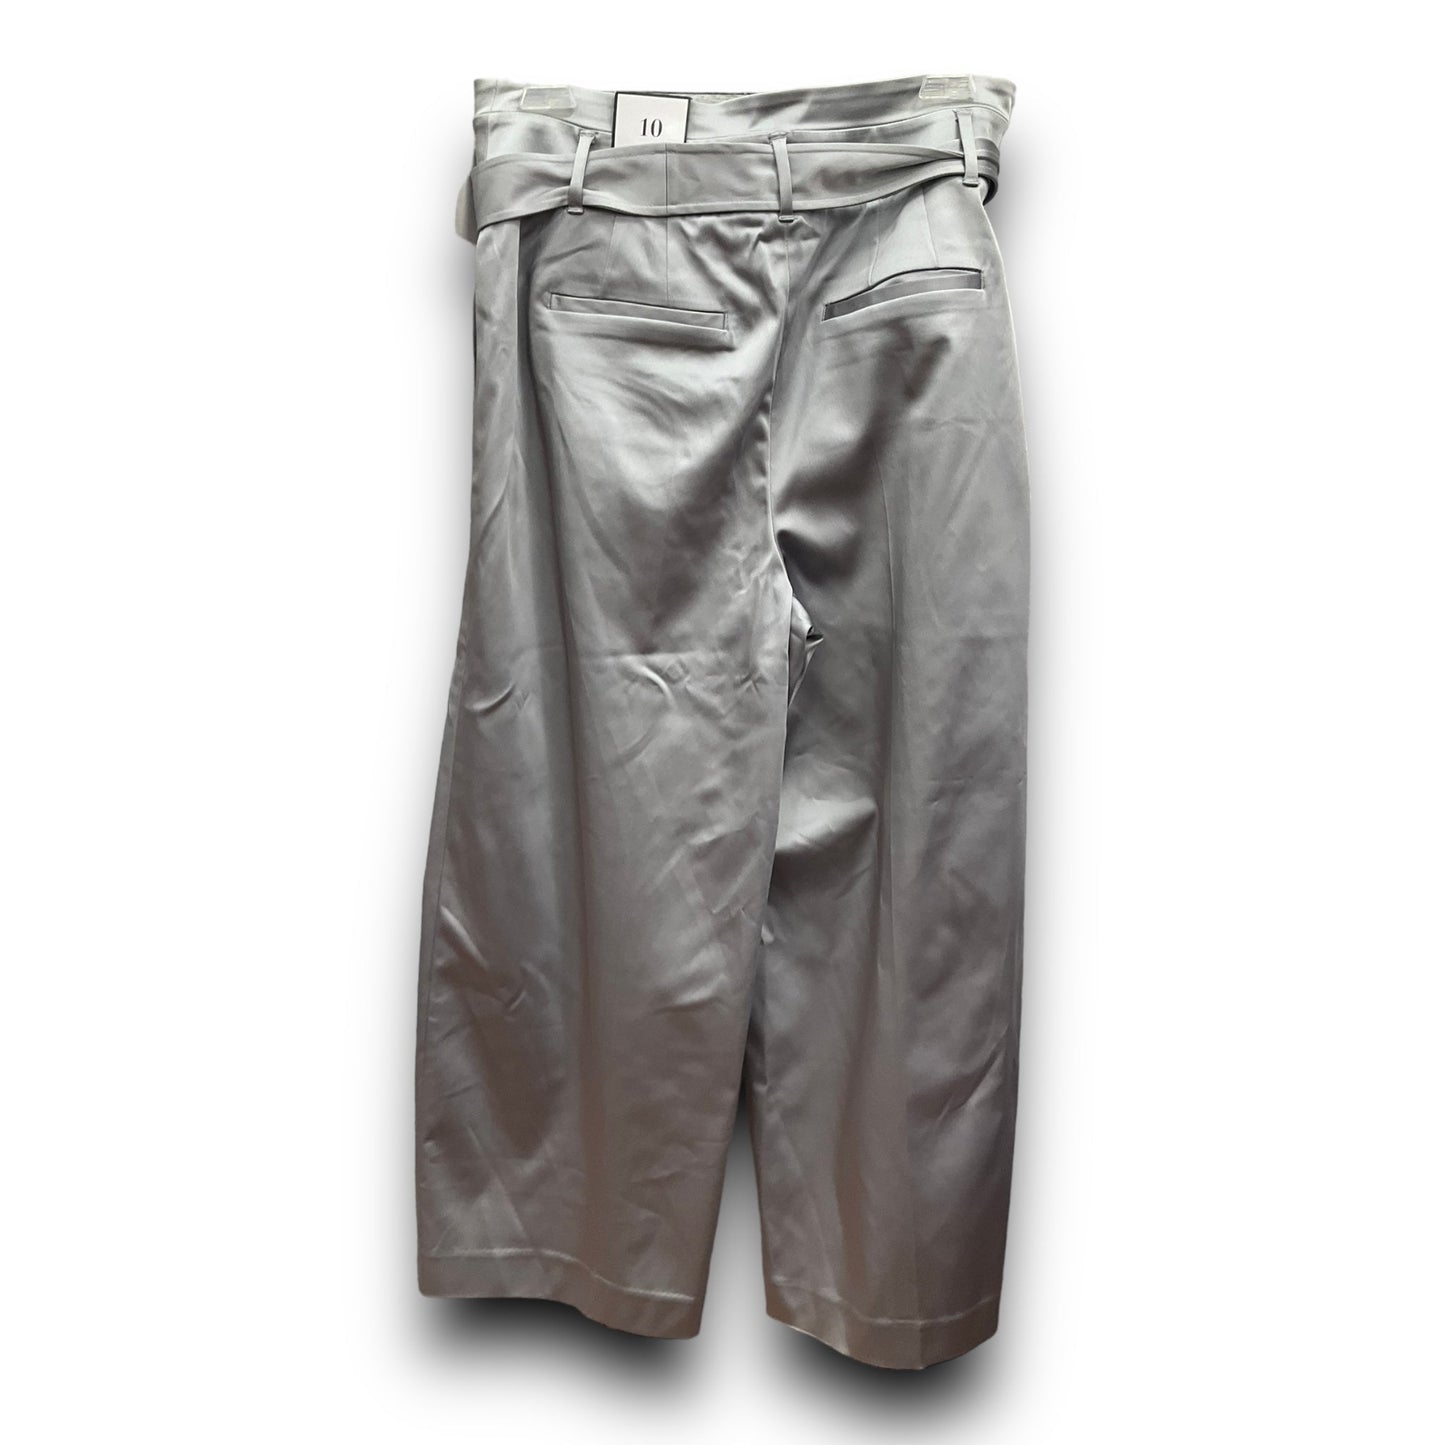 Silver Pants Wide Leg White House Black Market, Size 10